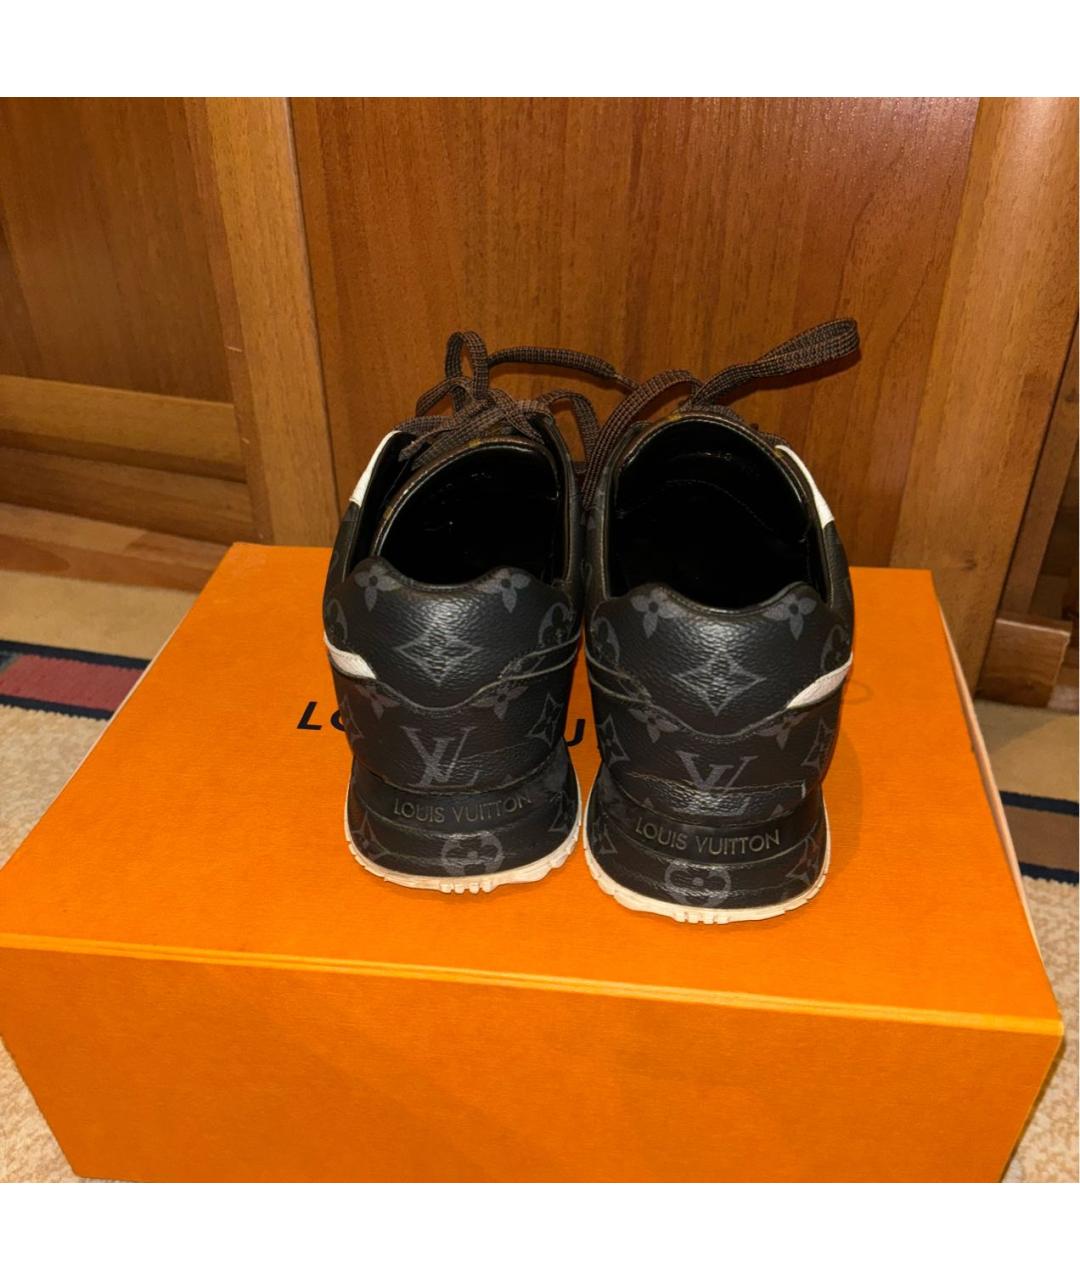 LOUIS VUITTON Мульти кожаные низкие кроссовки / кеды, фото 4